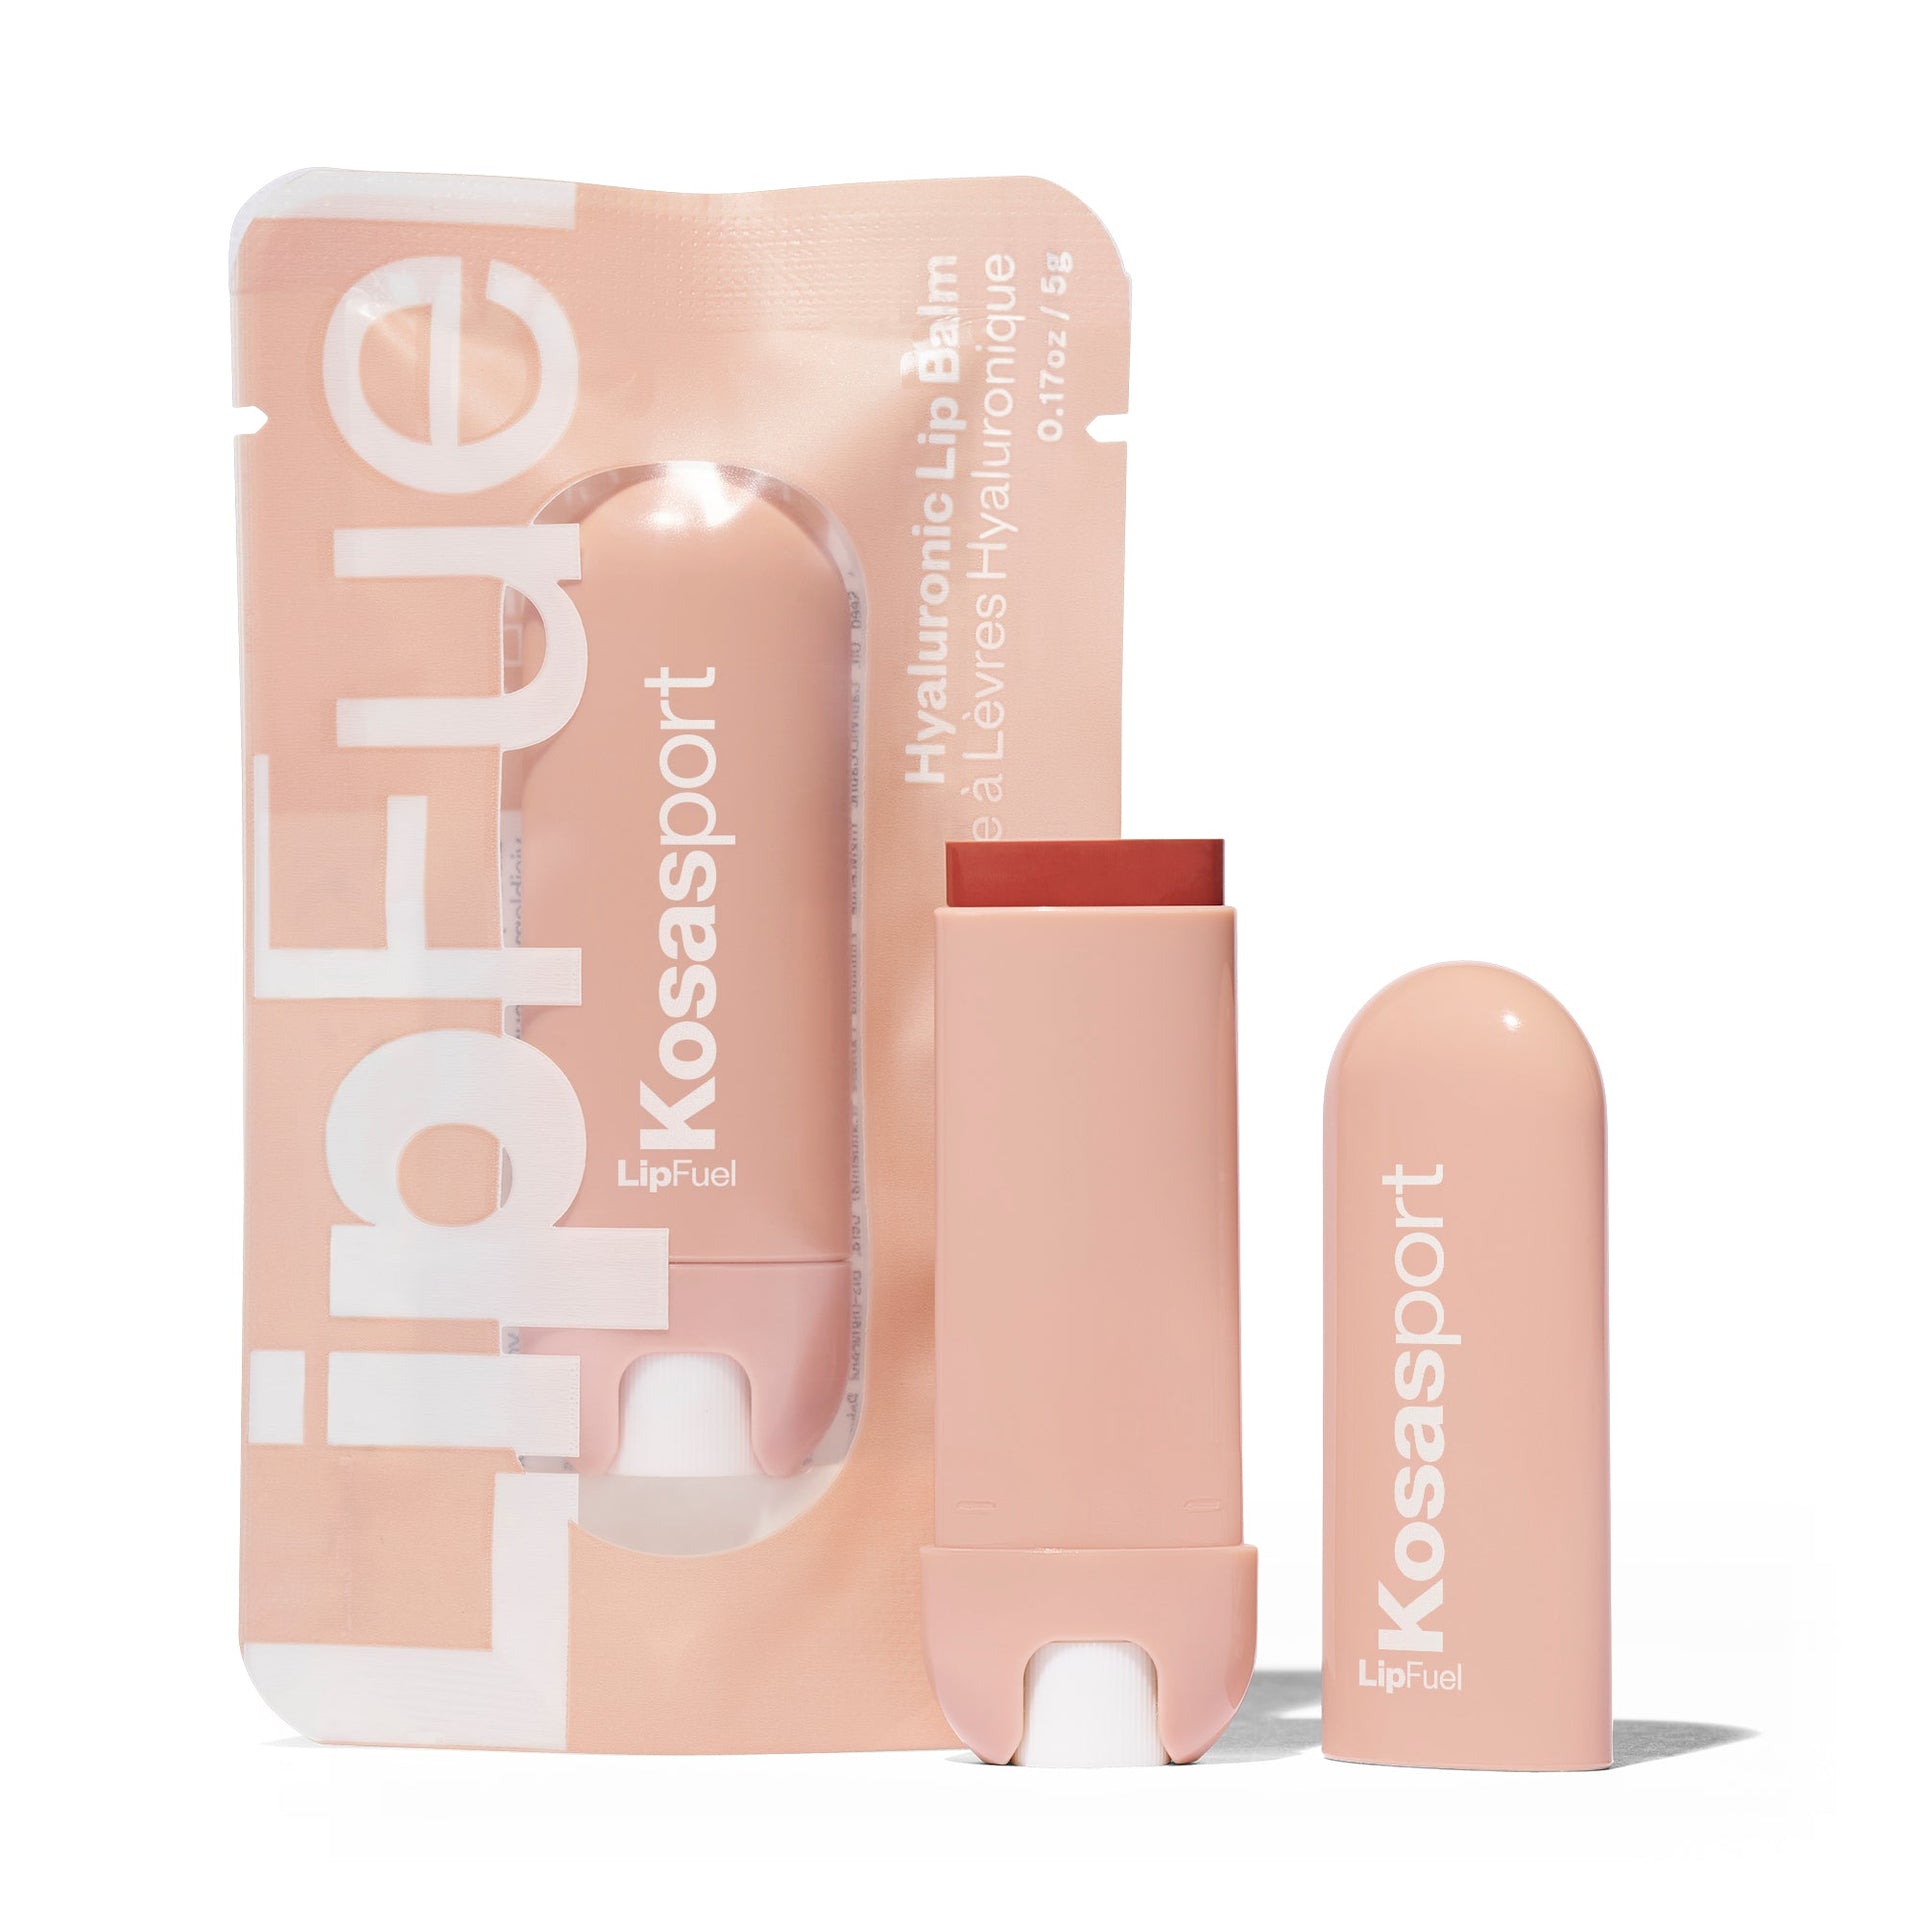 Flow LipFuel Lip Balm Packaging